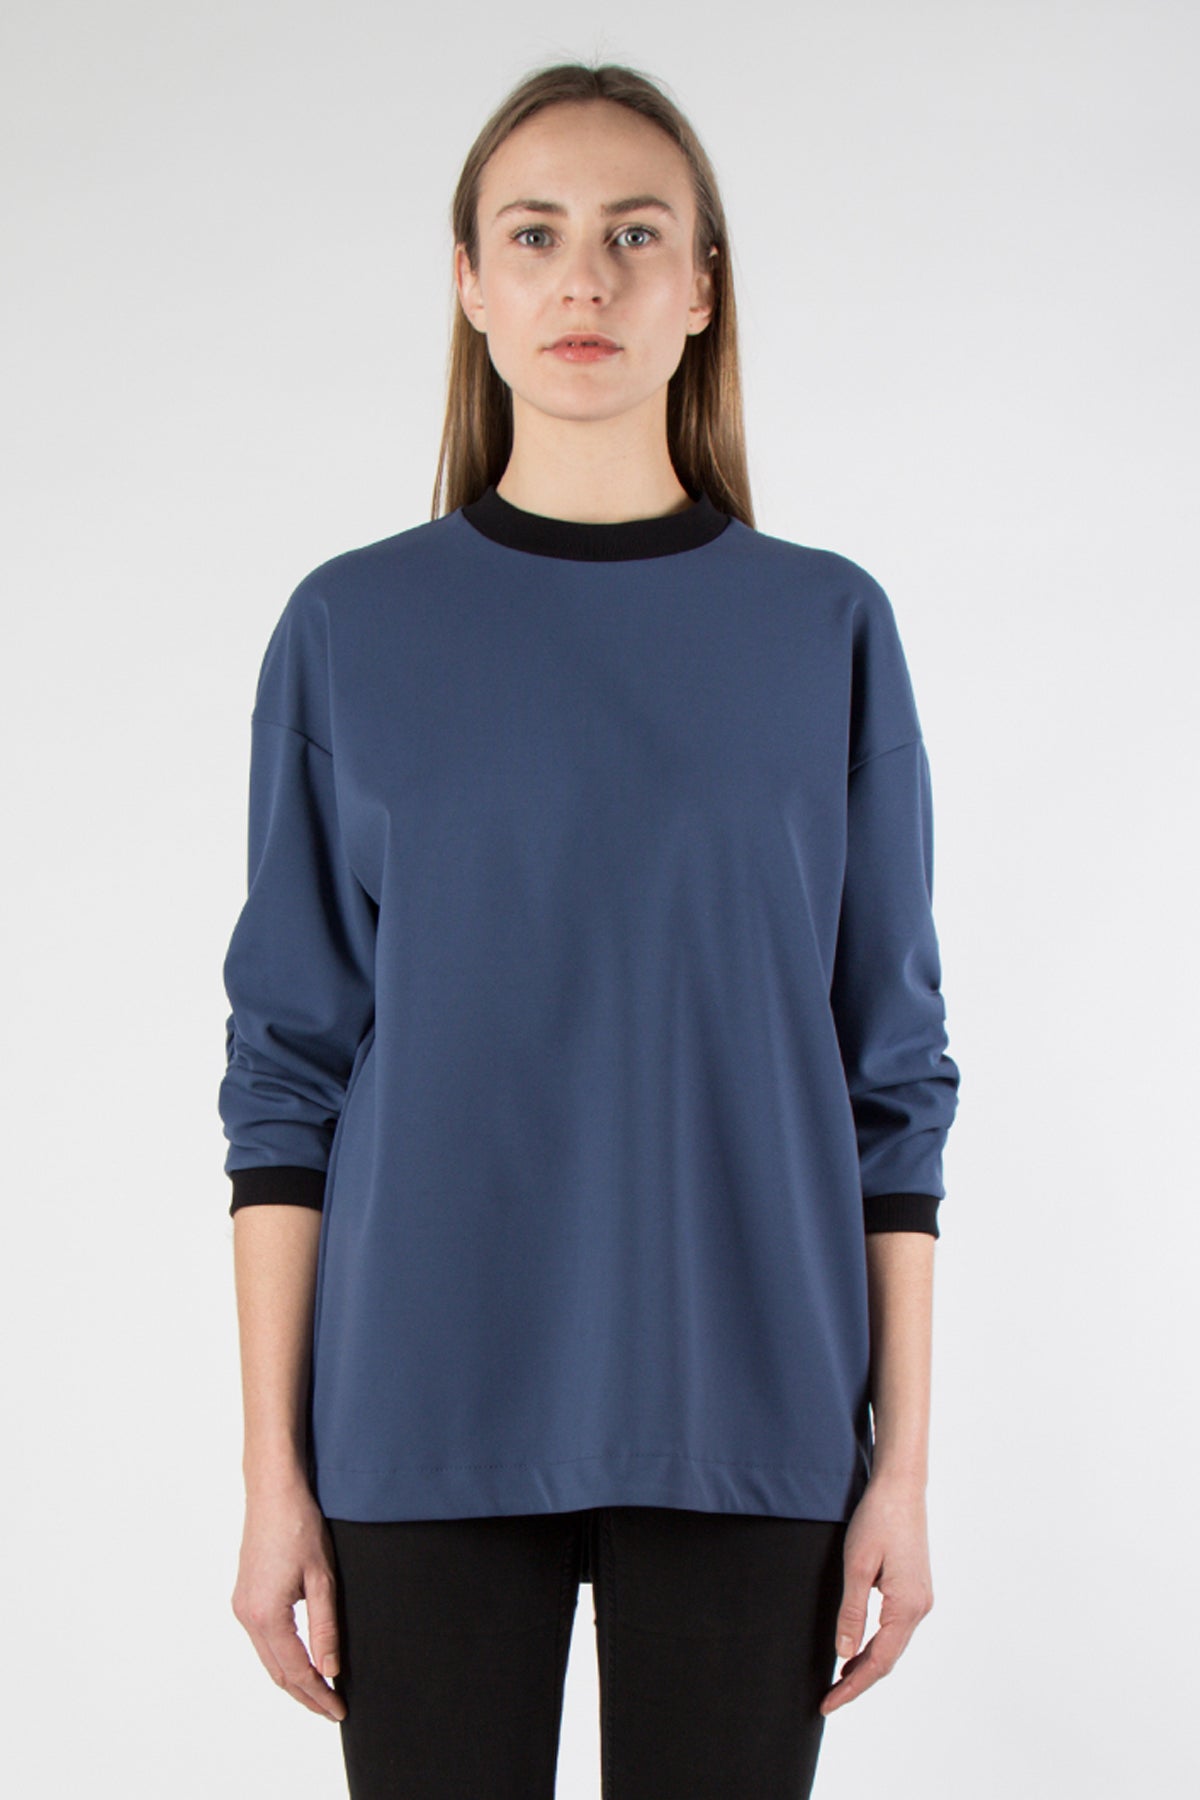 Lilja Shirt - blue